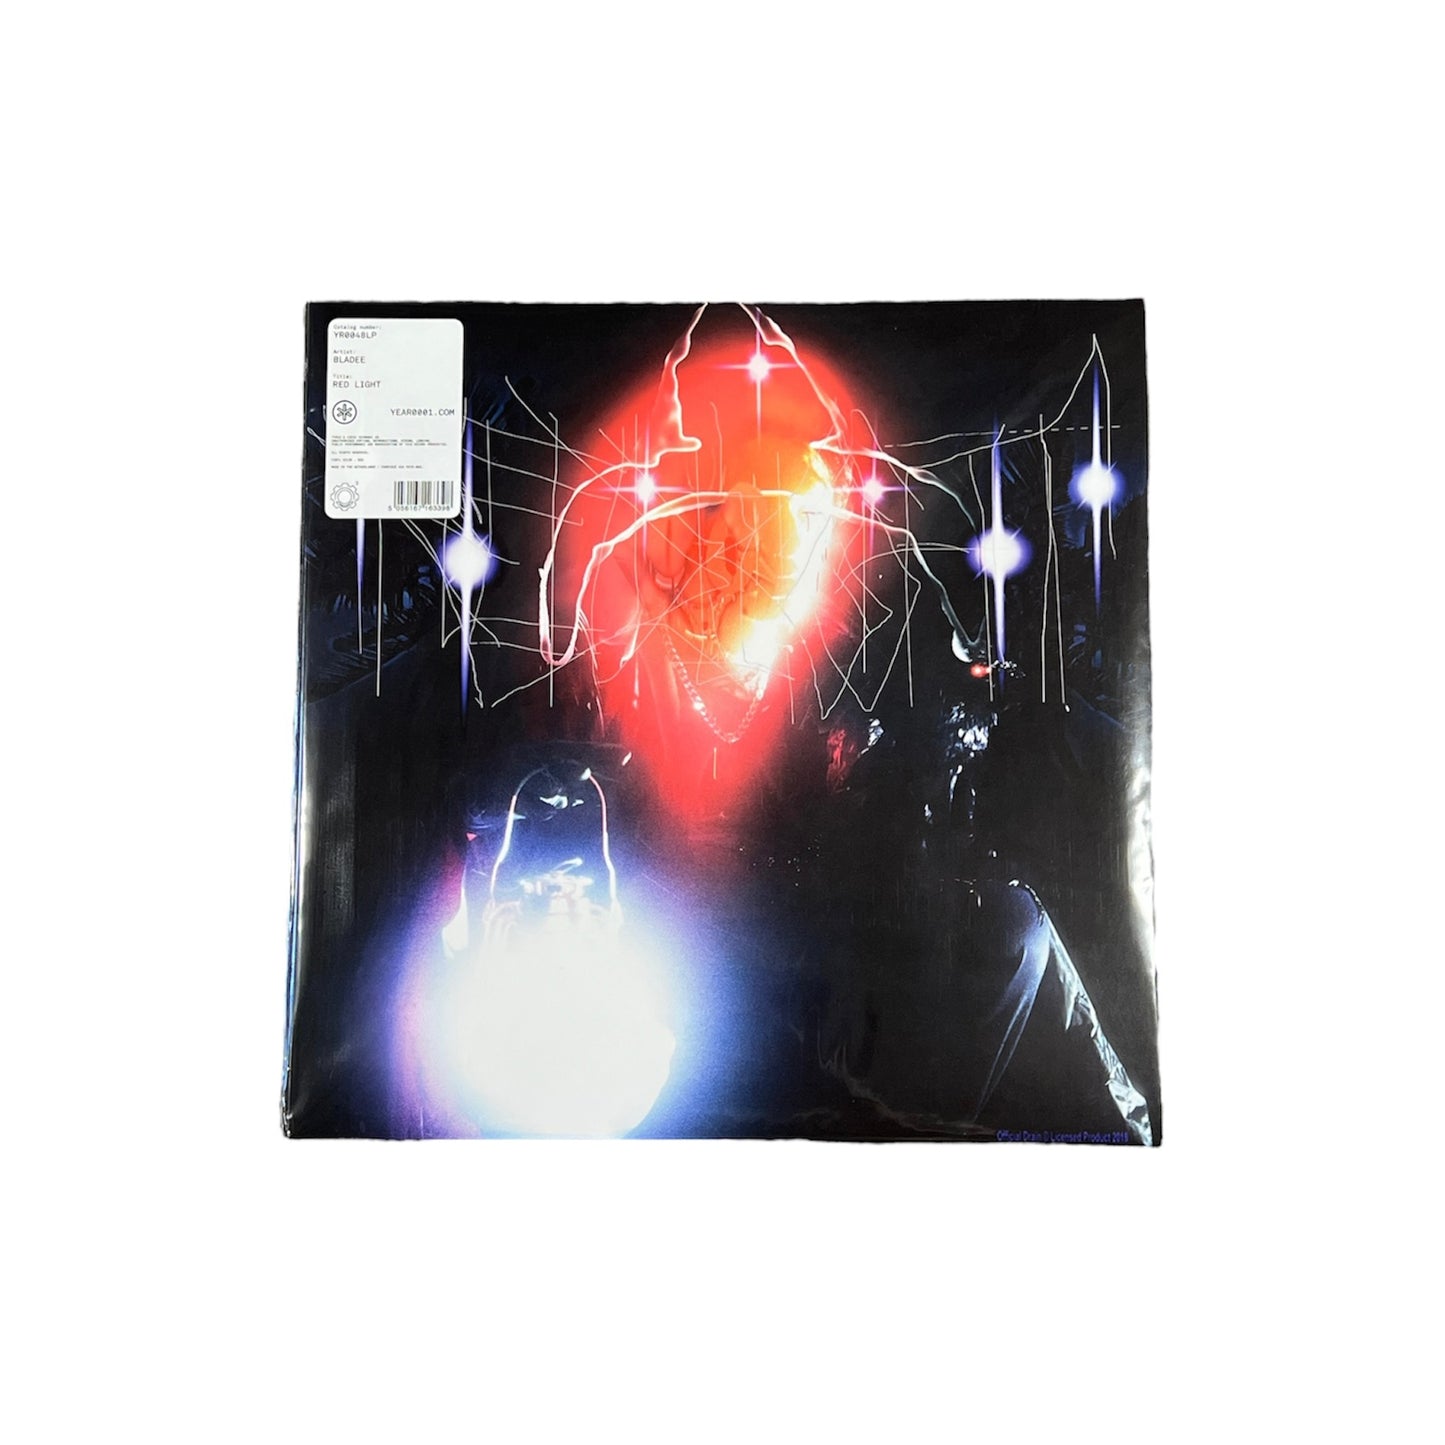 Bladee “Red Light” Vinyl